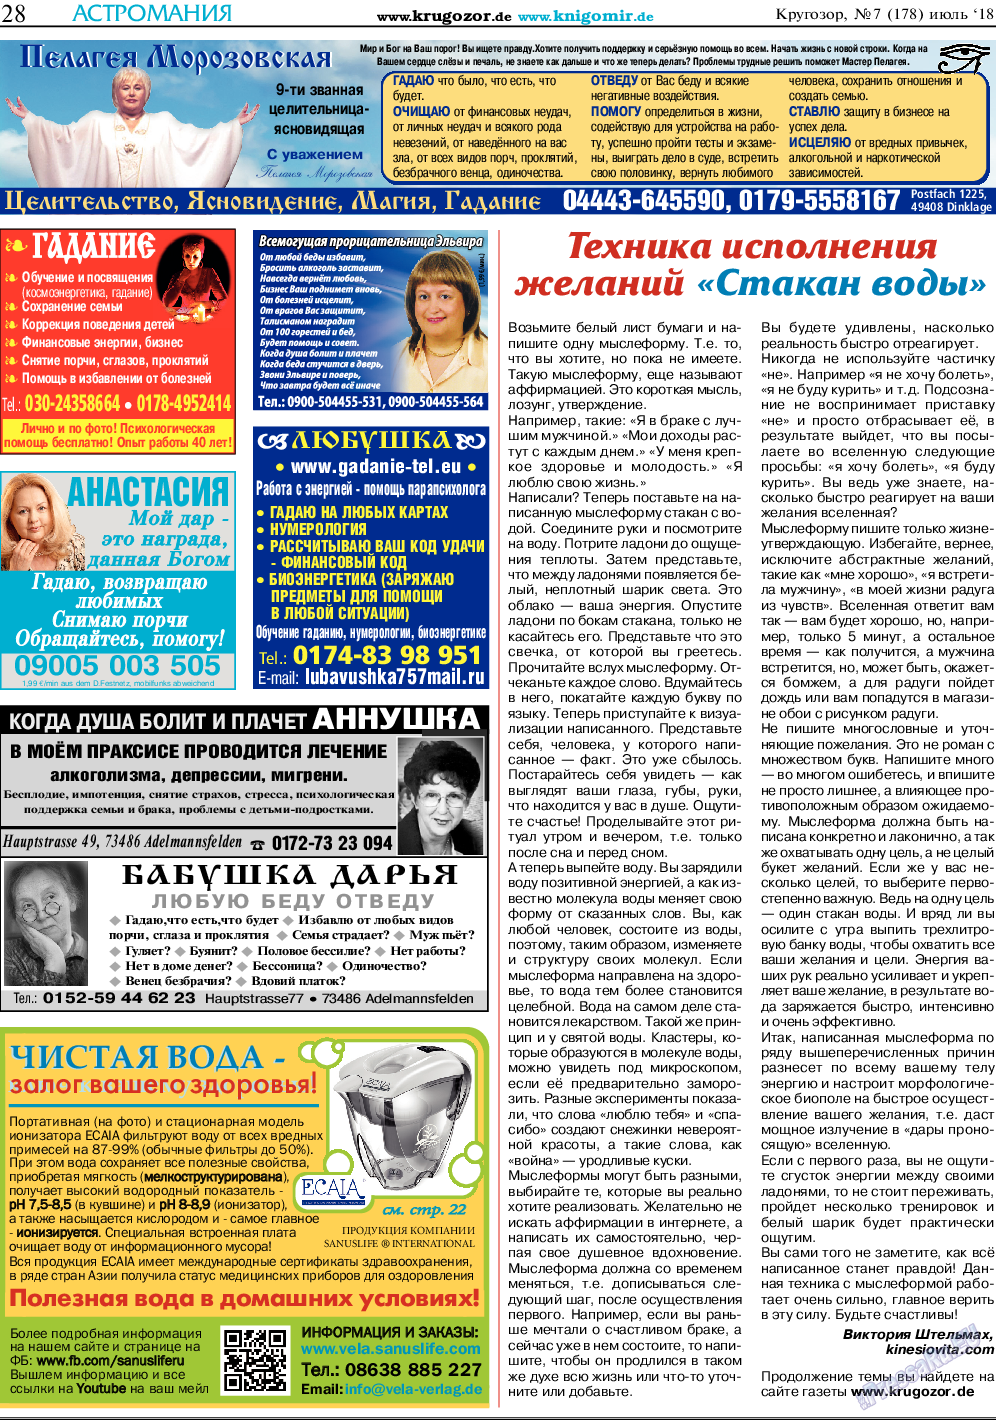 Кругозор, газета. 2018 №7 стр.28